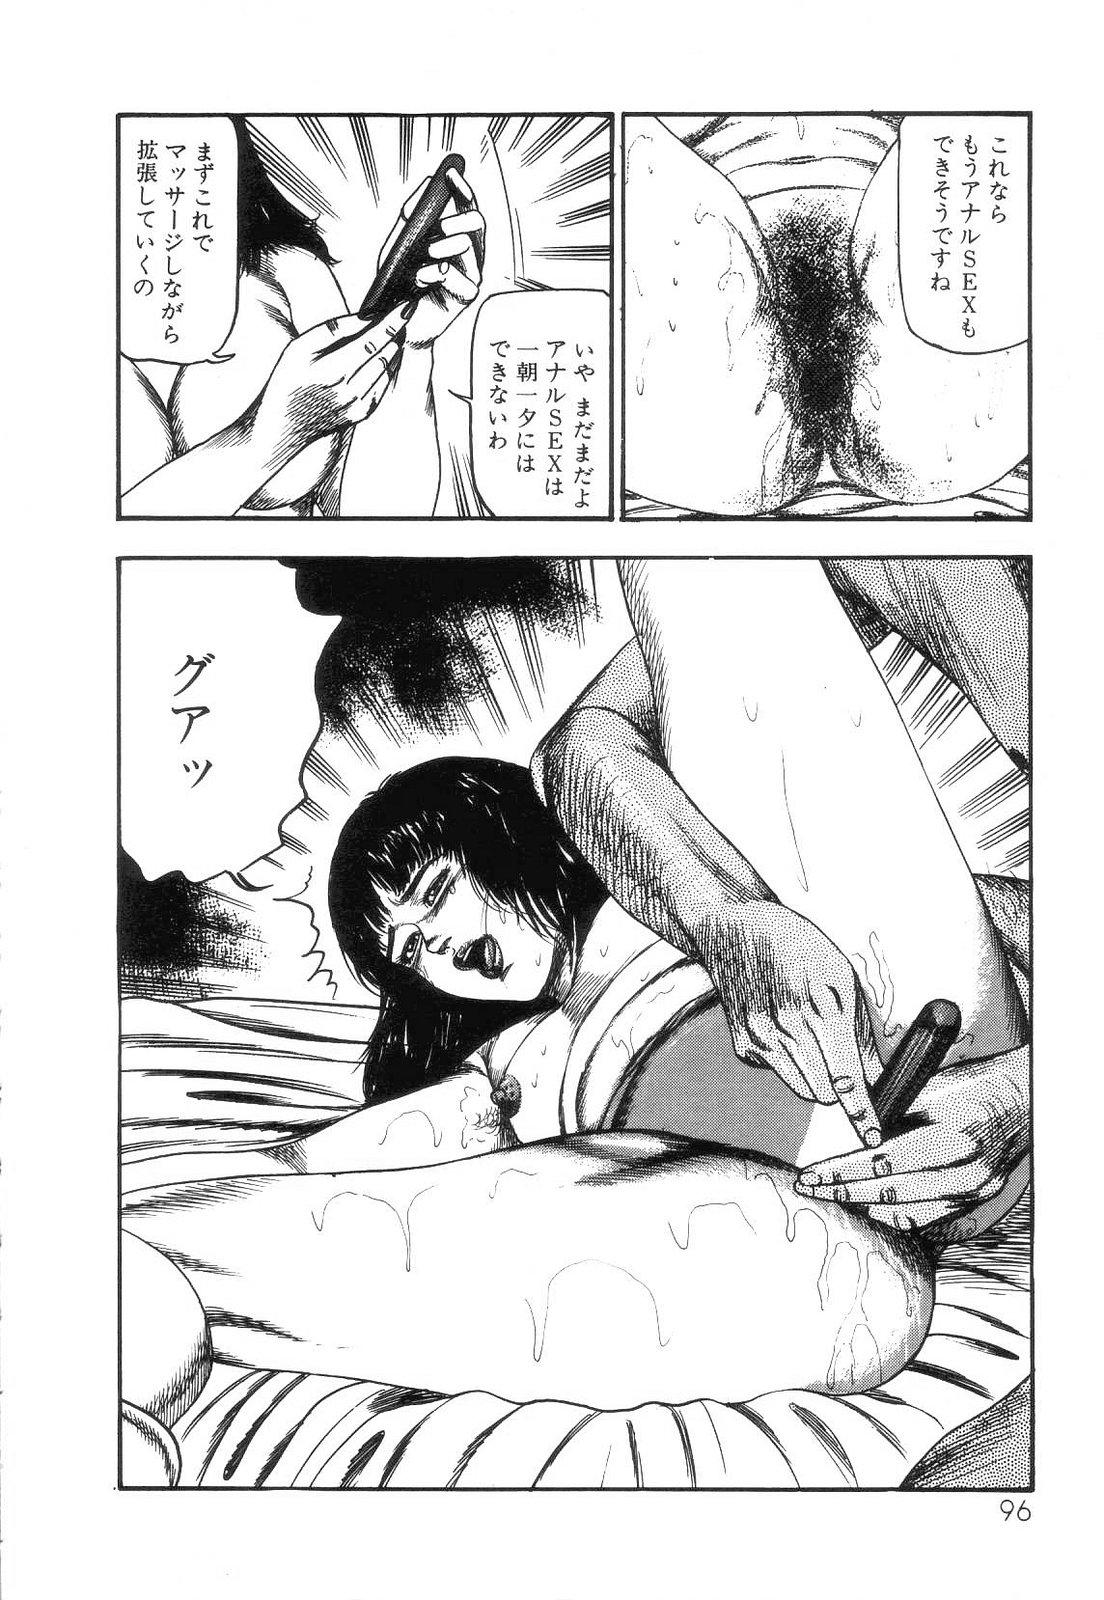 Shiro no Mokushiroku Vol. 4 - Bichiku Karen no Shou 97